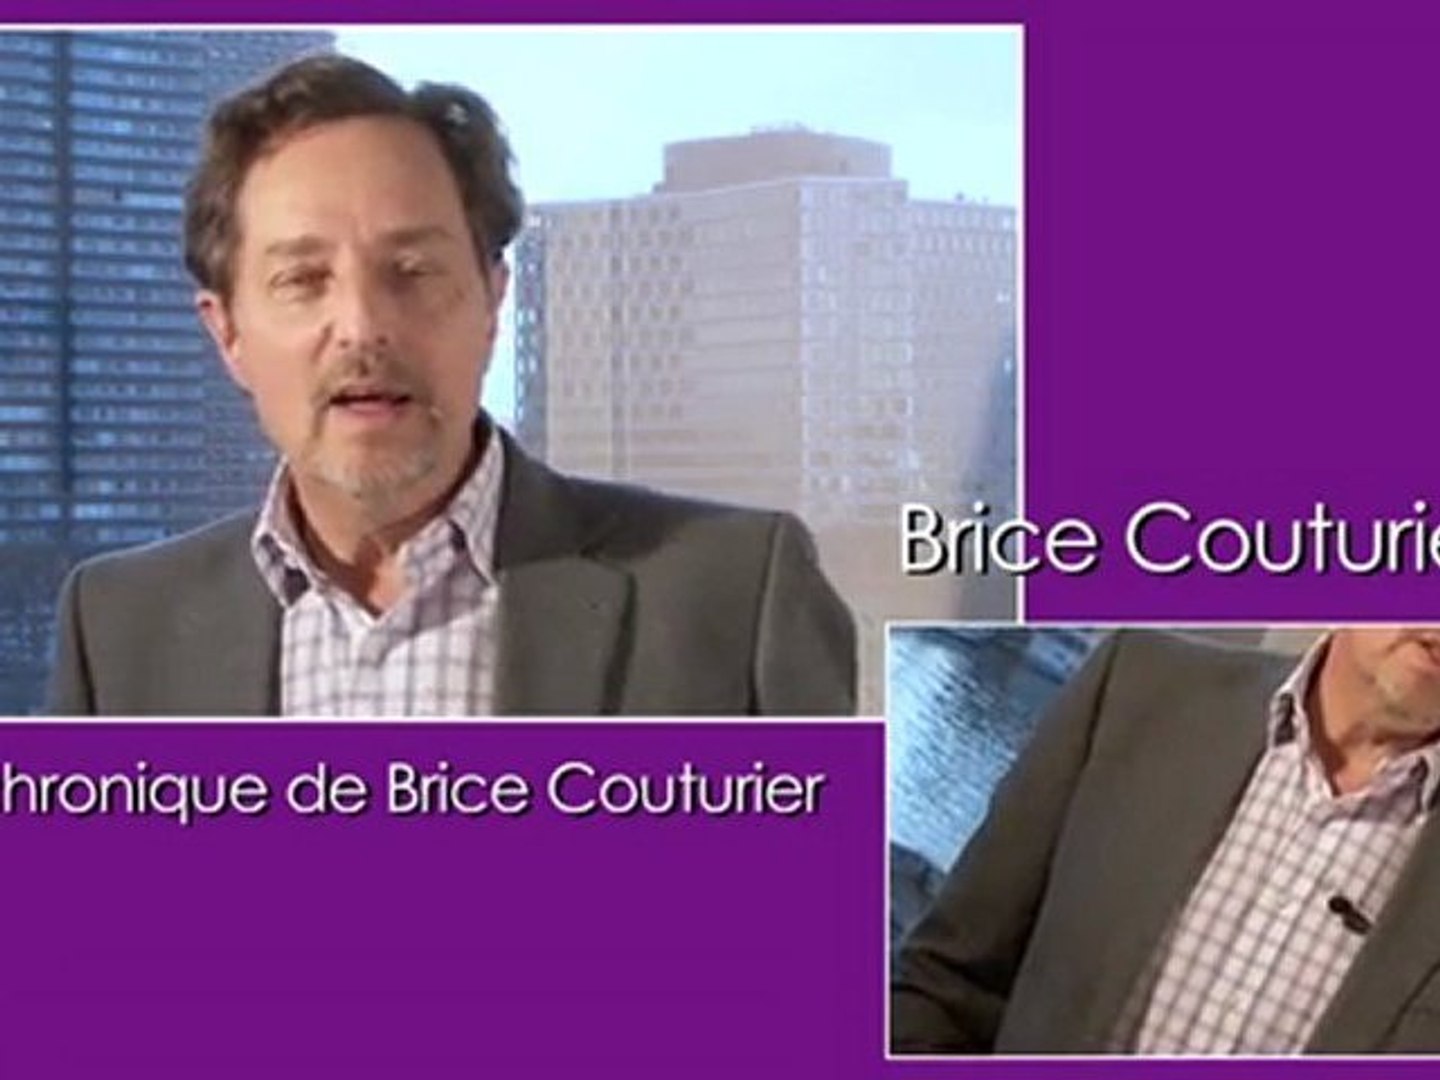 La chronique de Brice Couturier - Vidéo Dailymotion